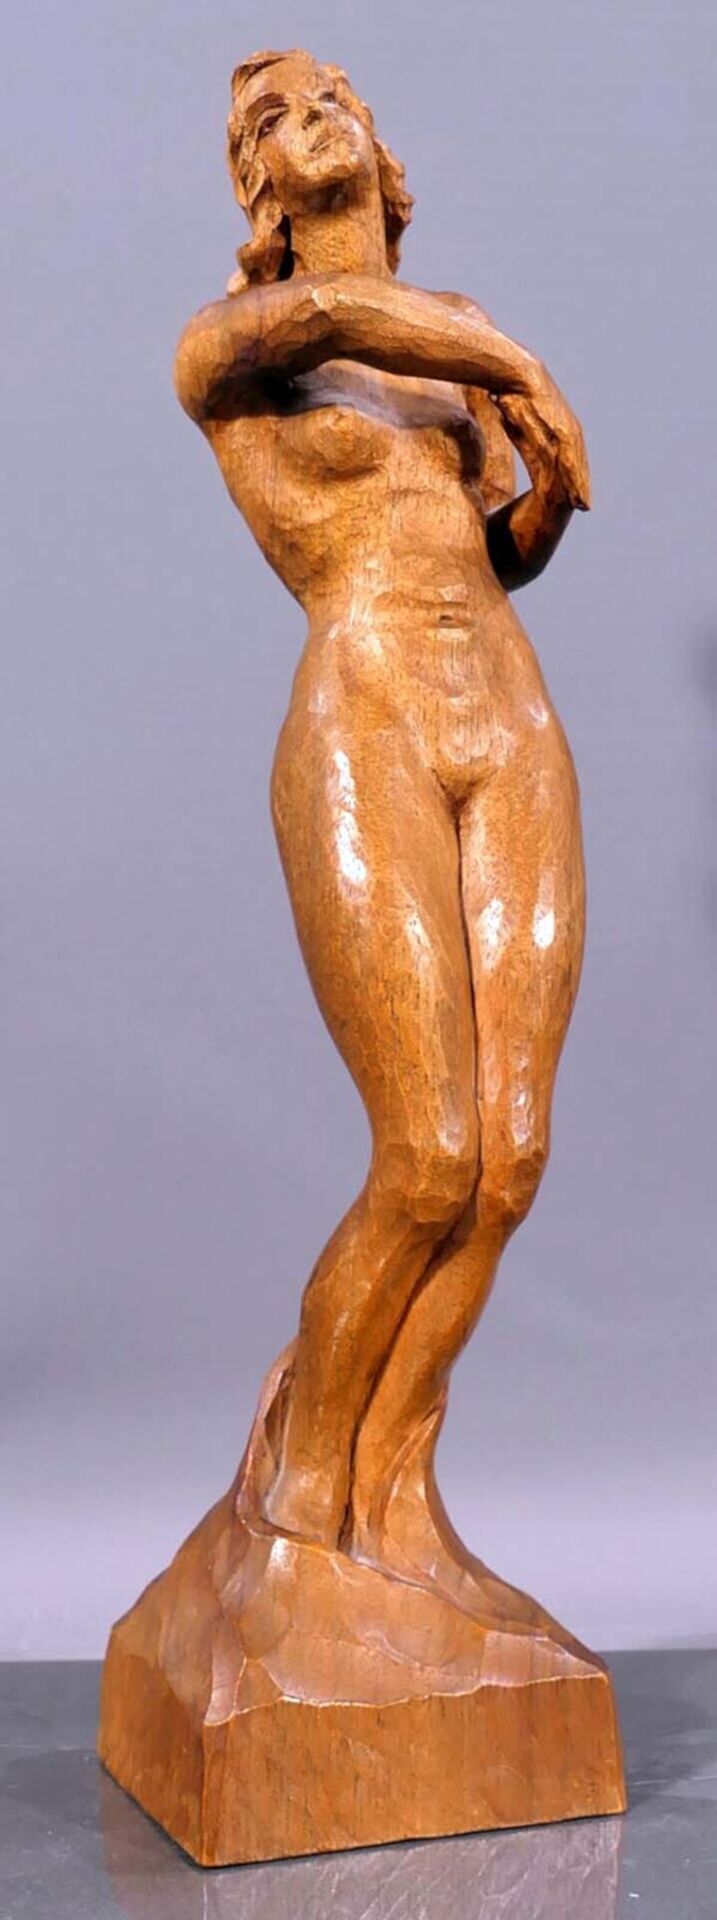 "Stehender Damenakt in bewegter Pose", ca. 35 cm hohe Holzschnitzfigur, unter dem Sockel bez.: Bern